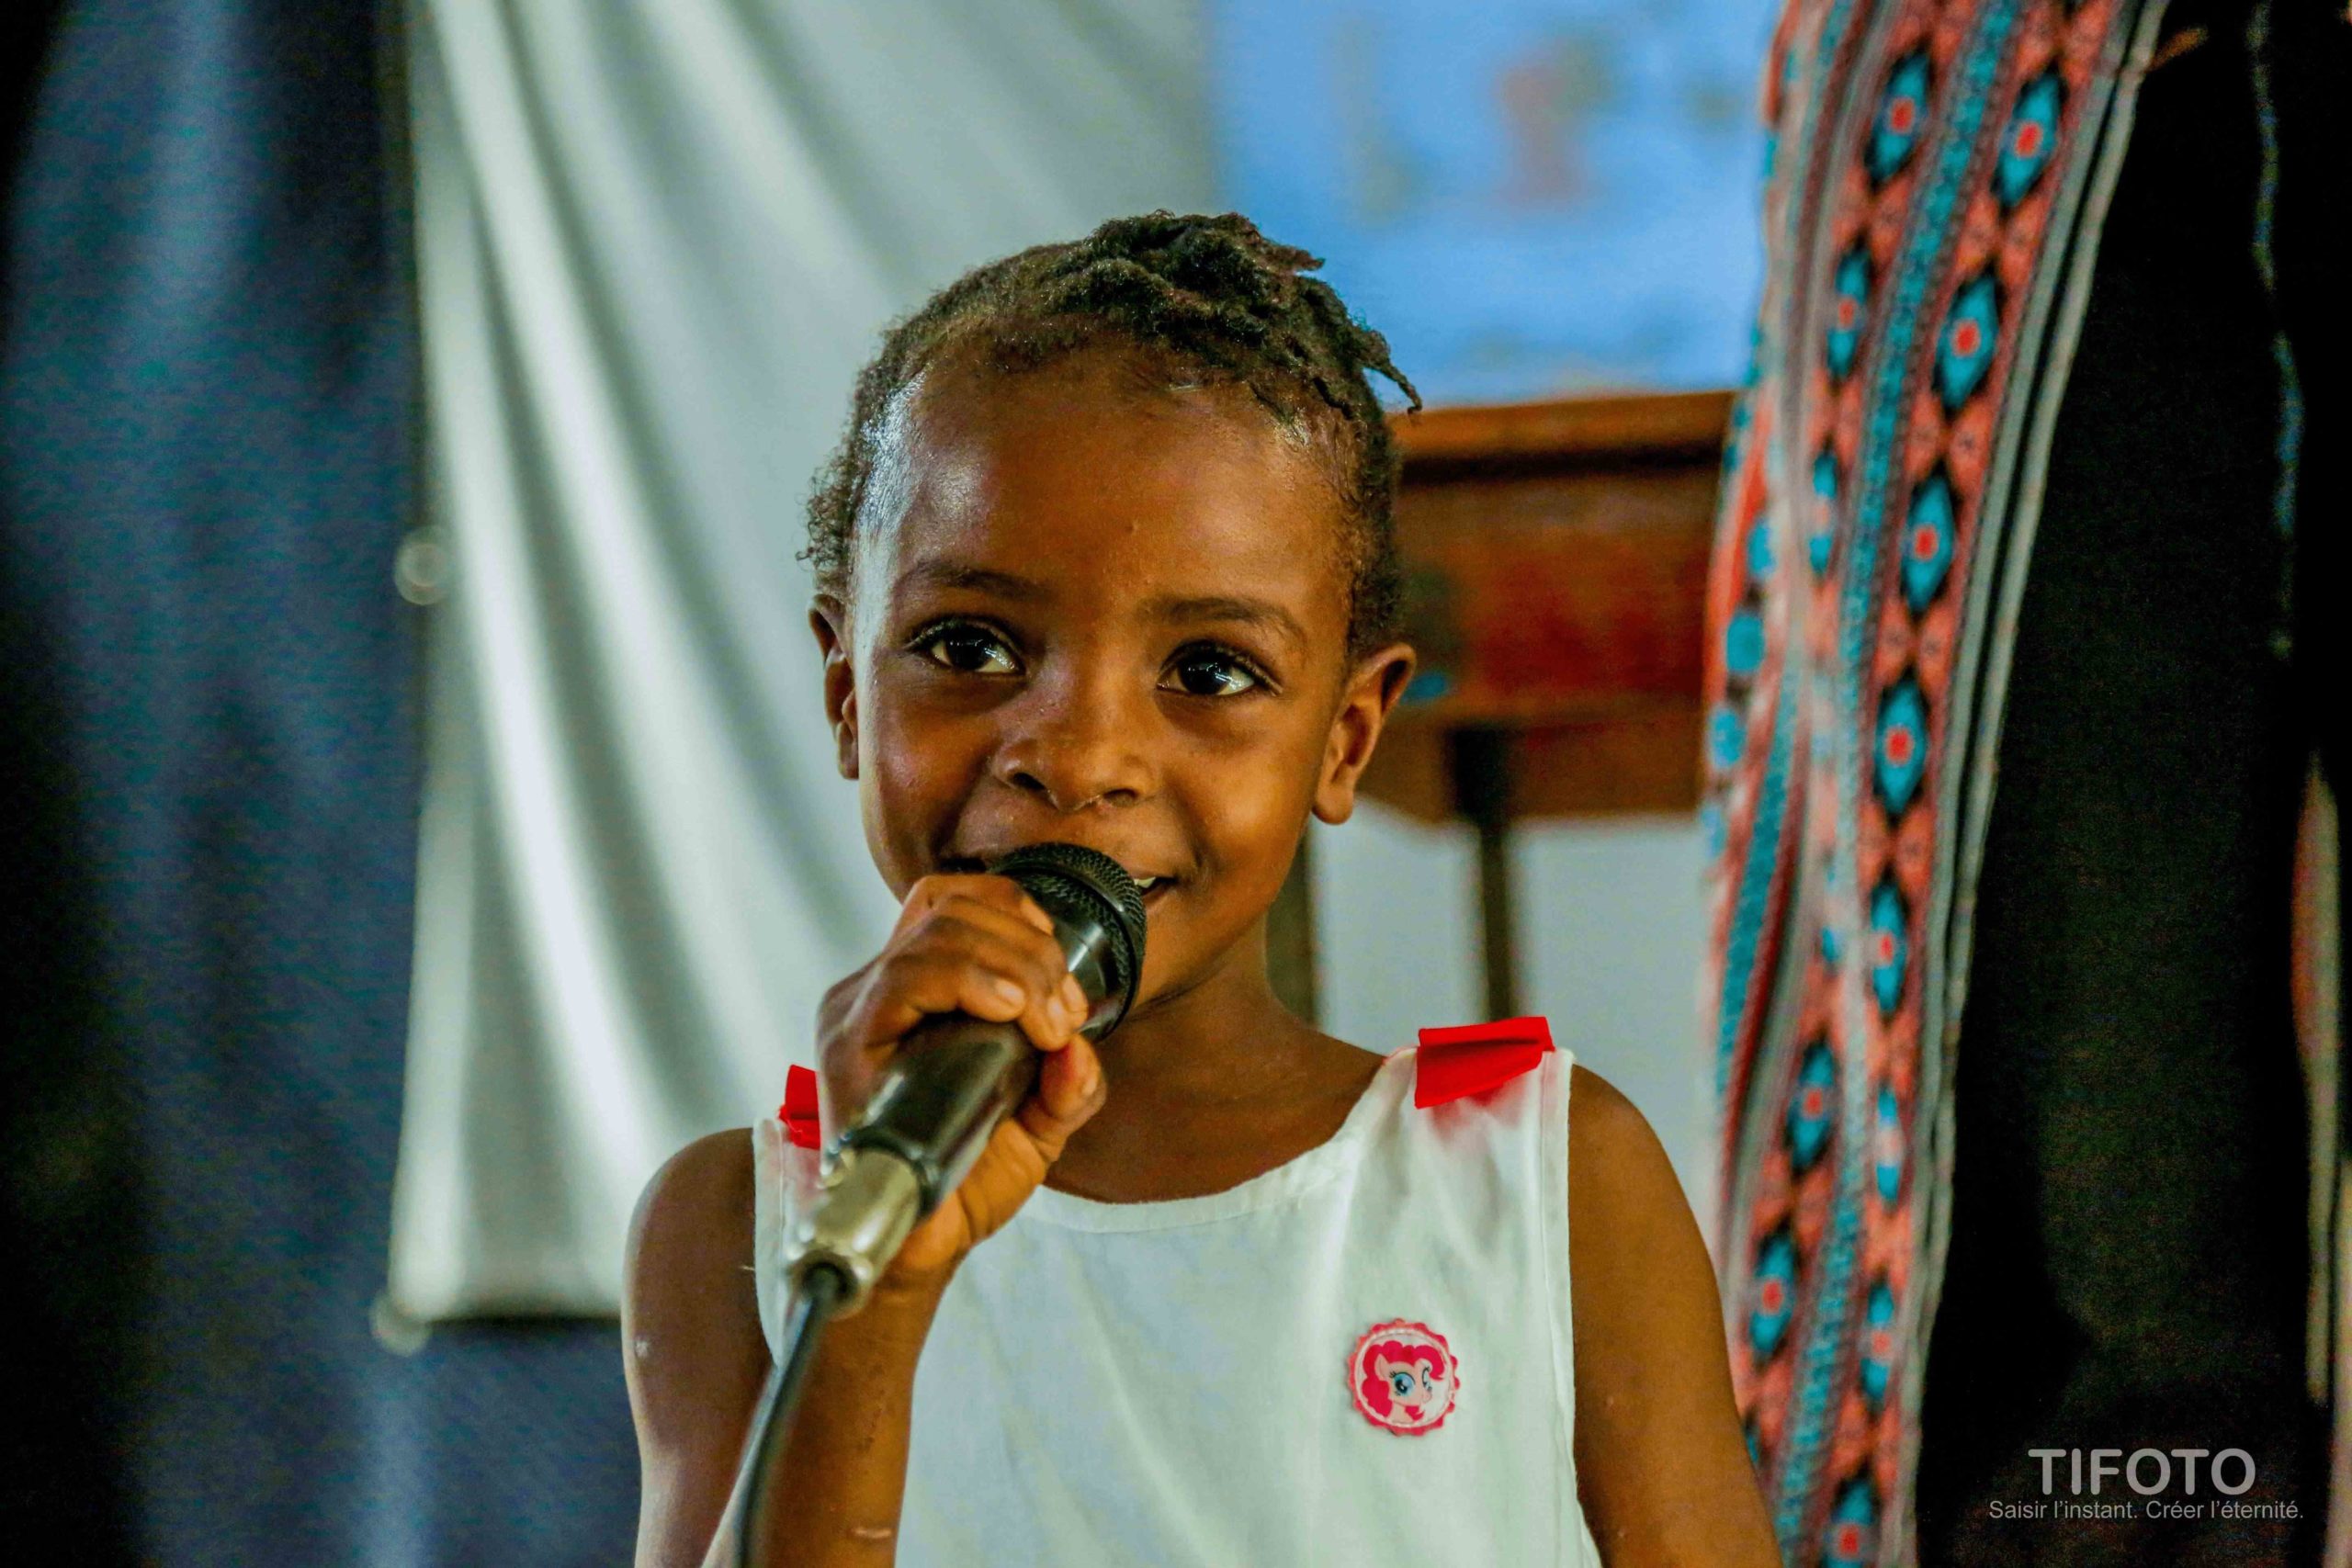 You are currently viewing 21 Jours de Mobilisation en Haïti : les enfants au cœur des débats